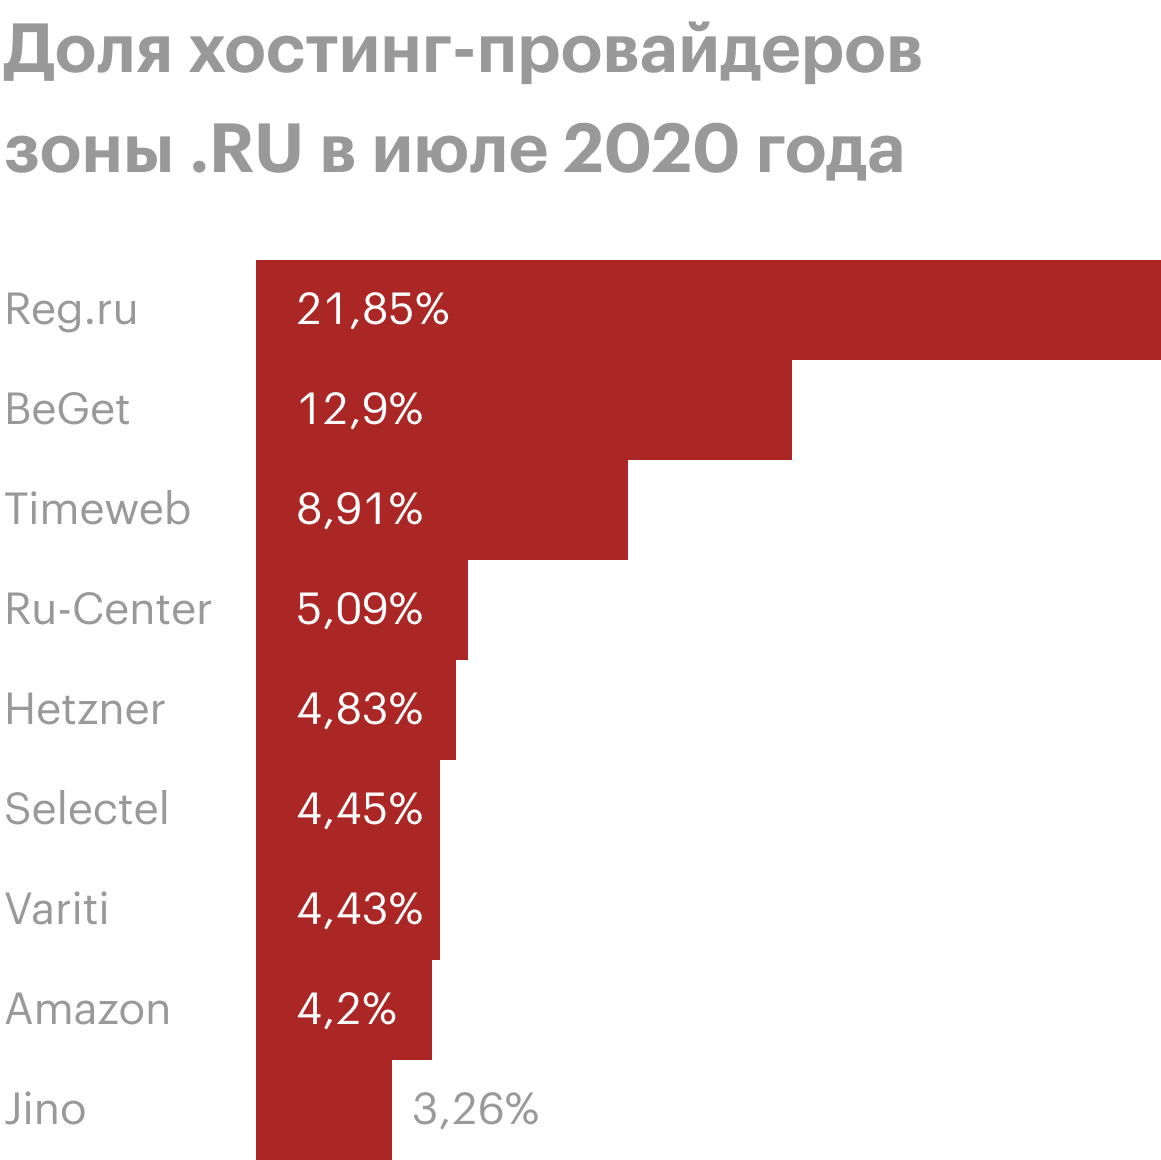 По&nbsp;статистике, 20%&nbsp;всех сайтов в&nbsp;зонах&nbsp;.рф и&nbsp;.ru используют хостинг от&nbsp;«Рег-ру». Вряд&nbsp;ли такой крупный провайдер внезапно исчезнет вместе с&nbsp;моим сайтом. Источник: statonline.ru